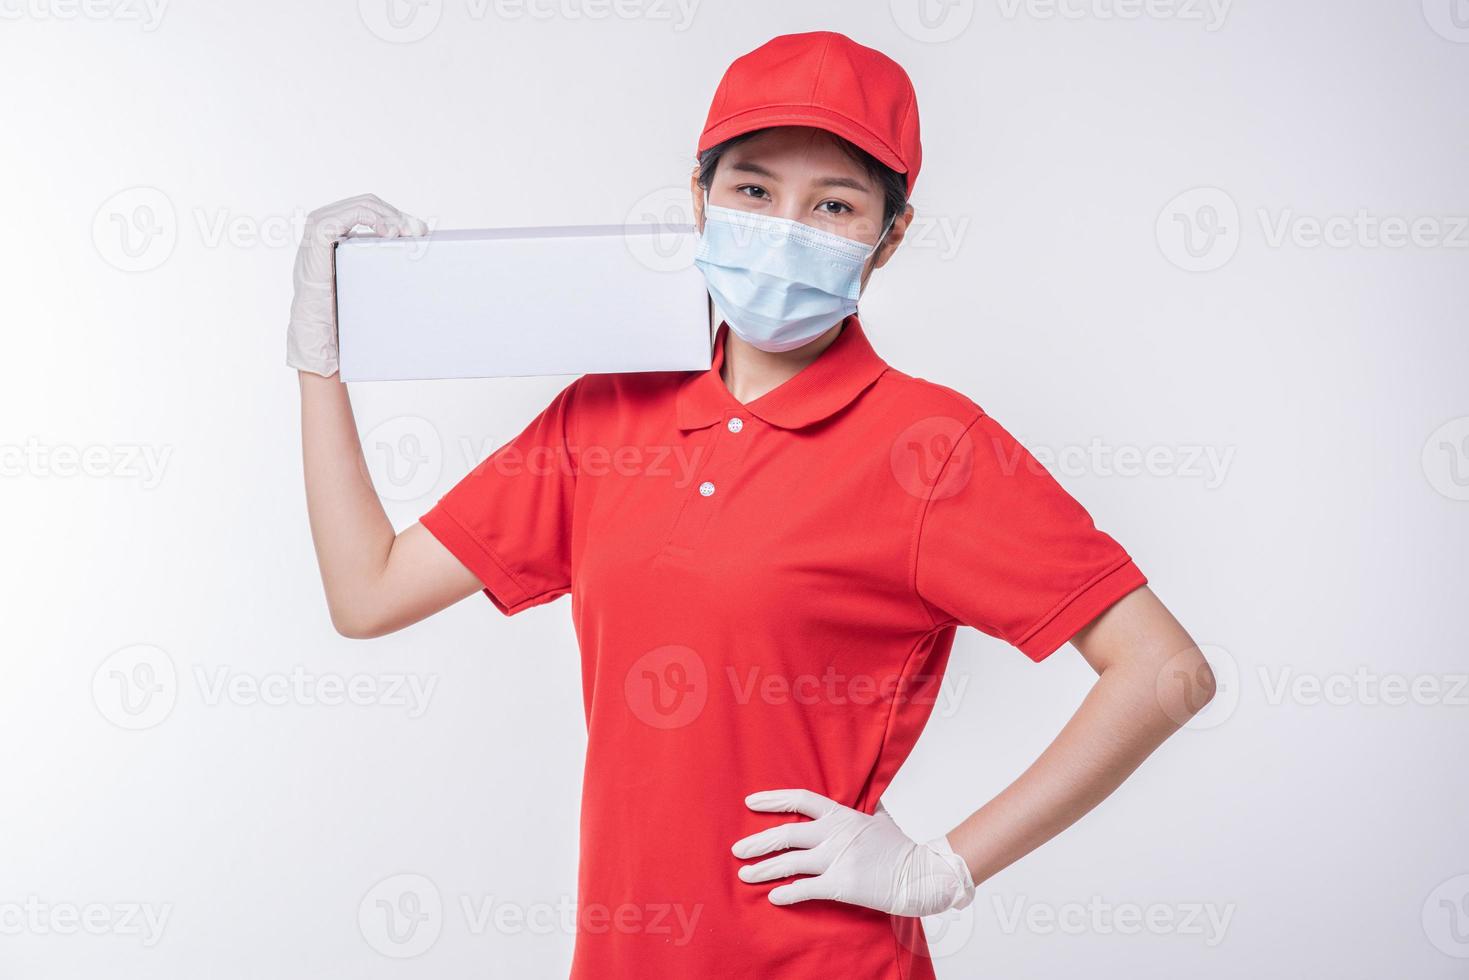 imagen de un joven repartidor consciente con gorra roja en blanco, camiseta uniforme, guantes de máscara facial de pie con una caja de cartón blanca vacía aislada en un estudio de fondo gris claro foto